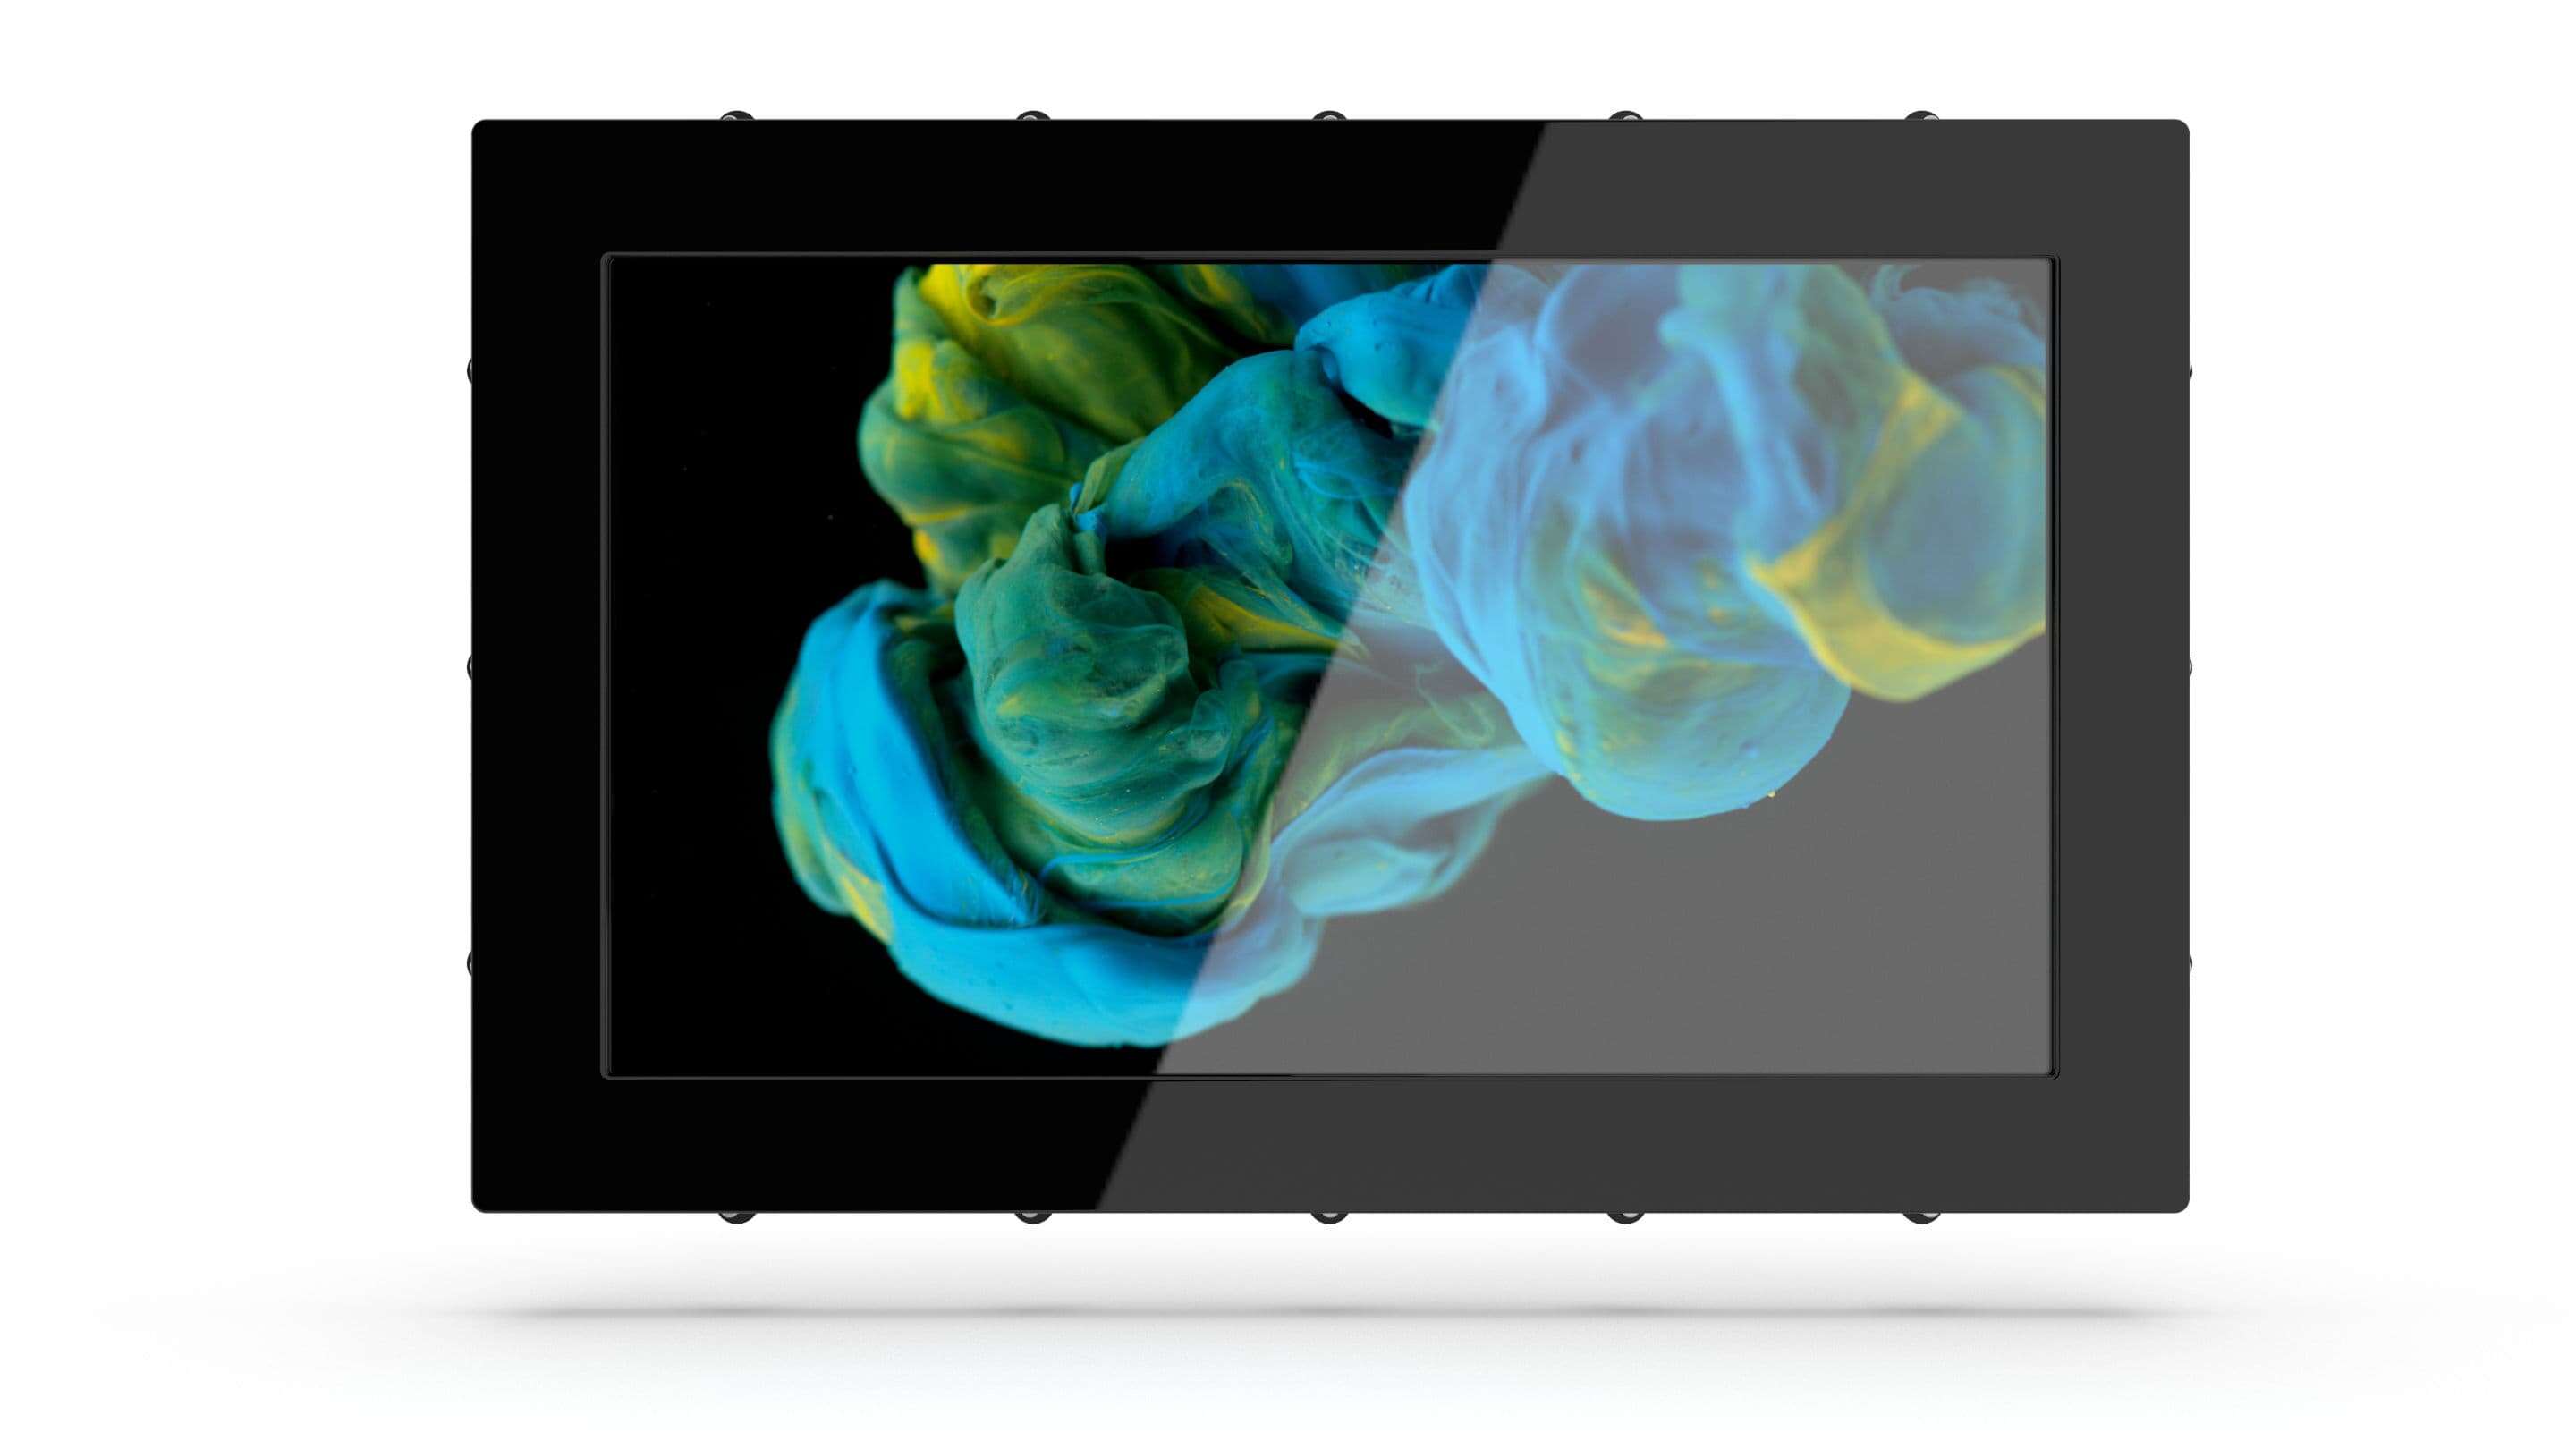 Etusivu - Industrial Monitorit musta tabletti, jonka näytössä näkyy sinistä ja keltaista maalia